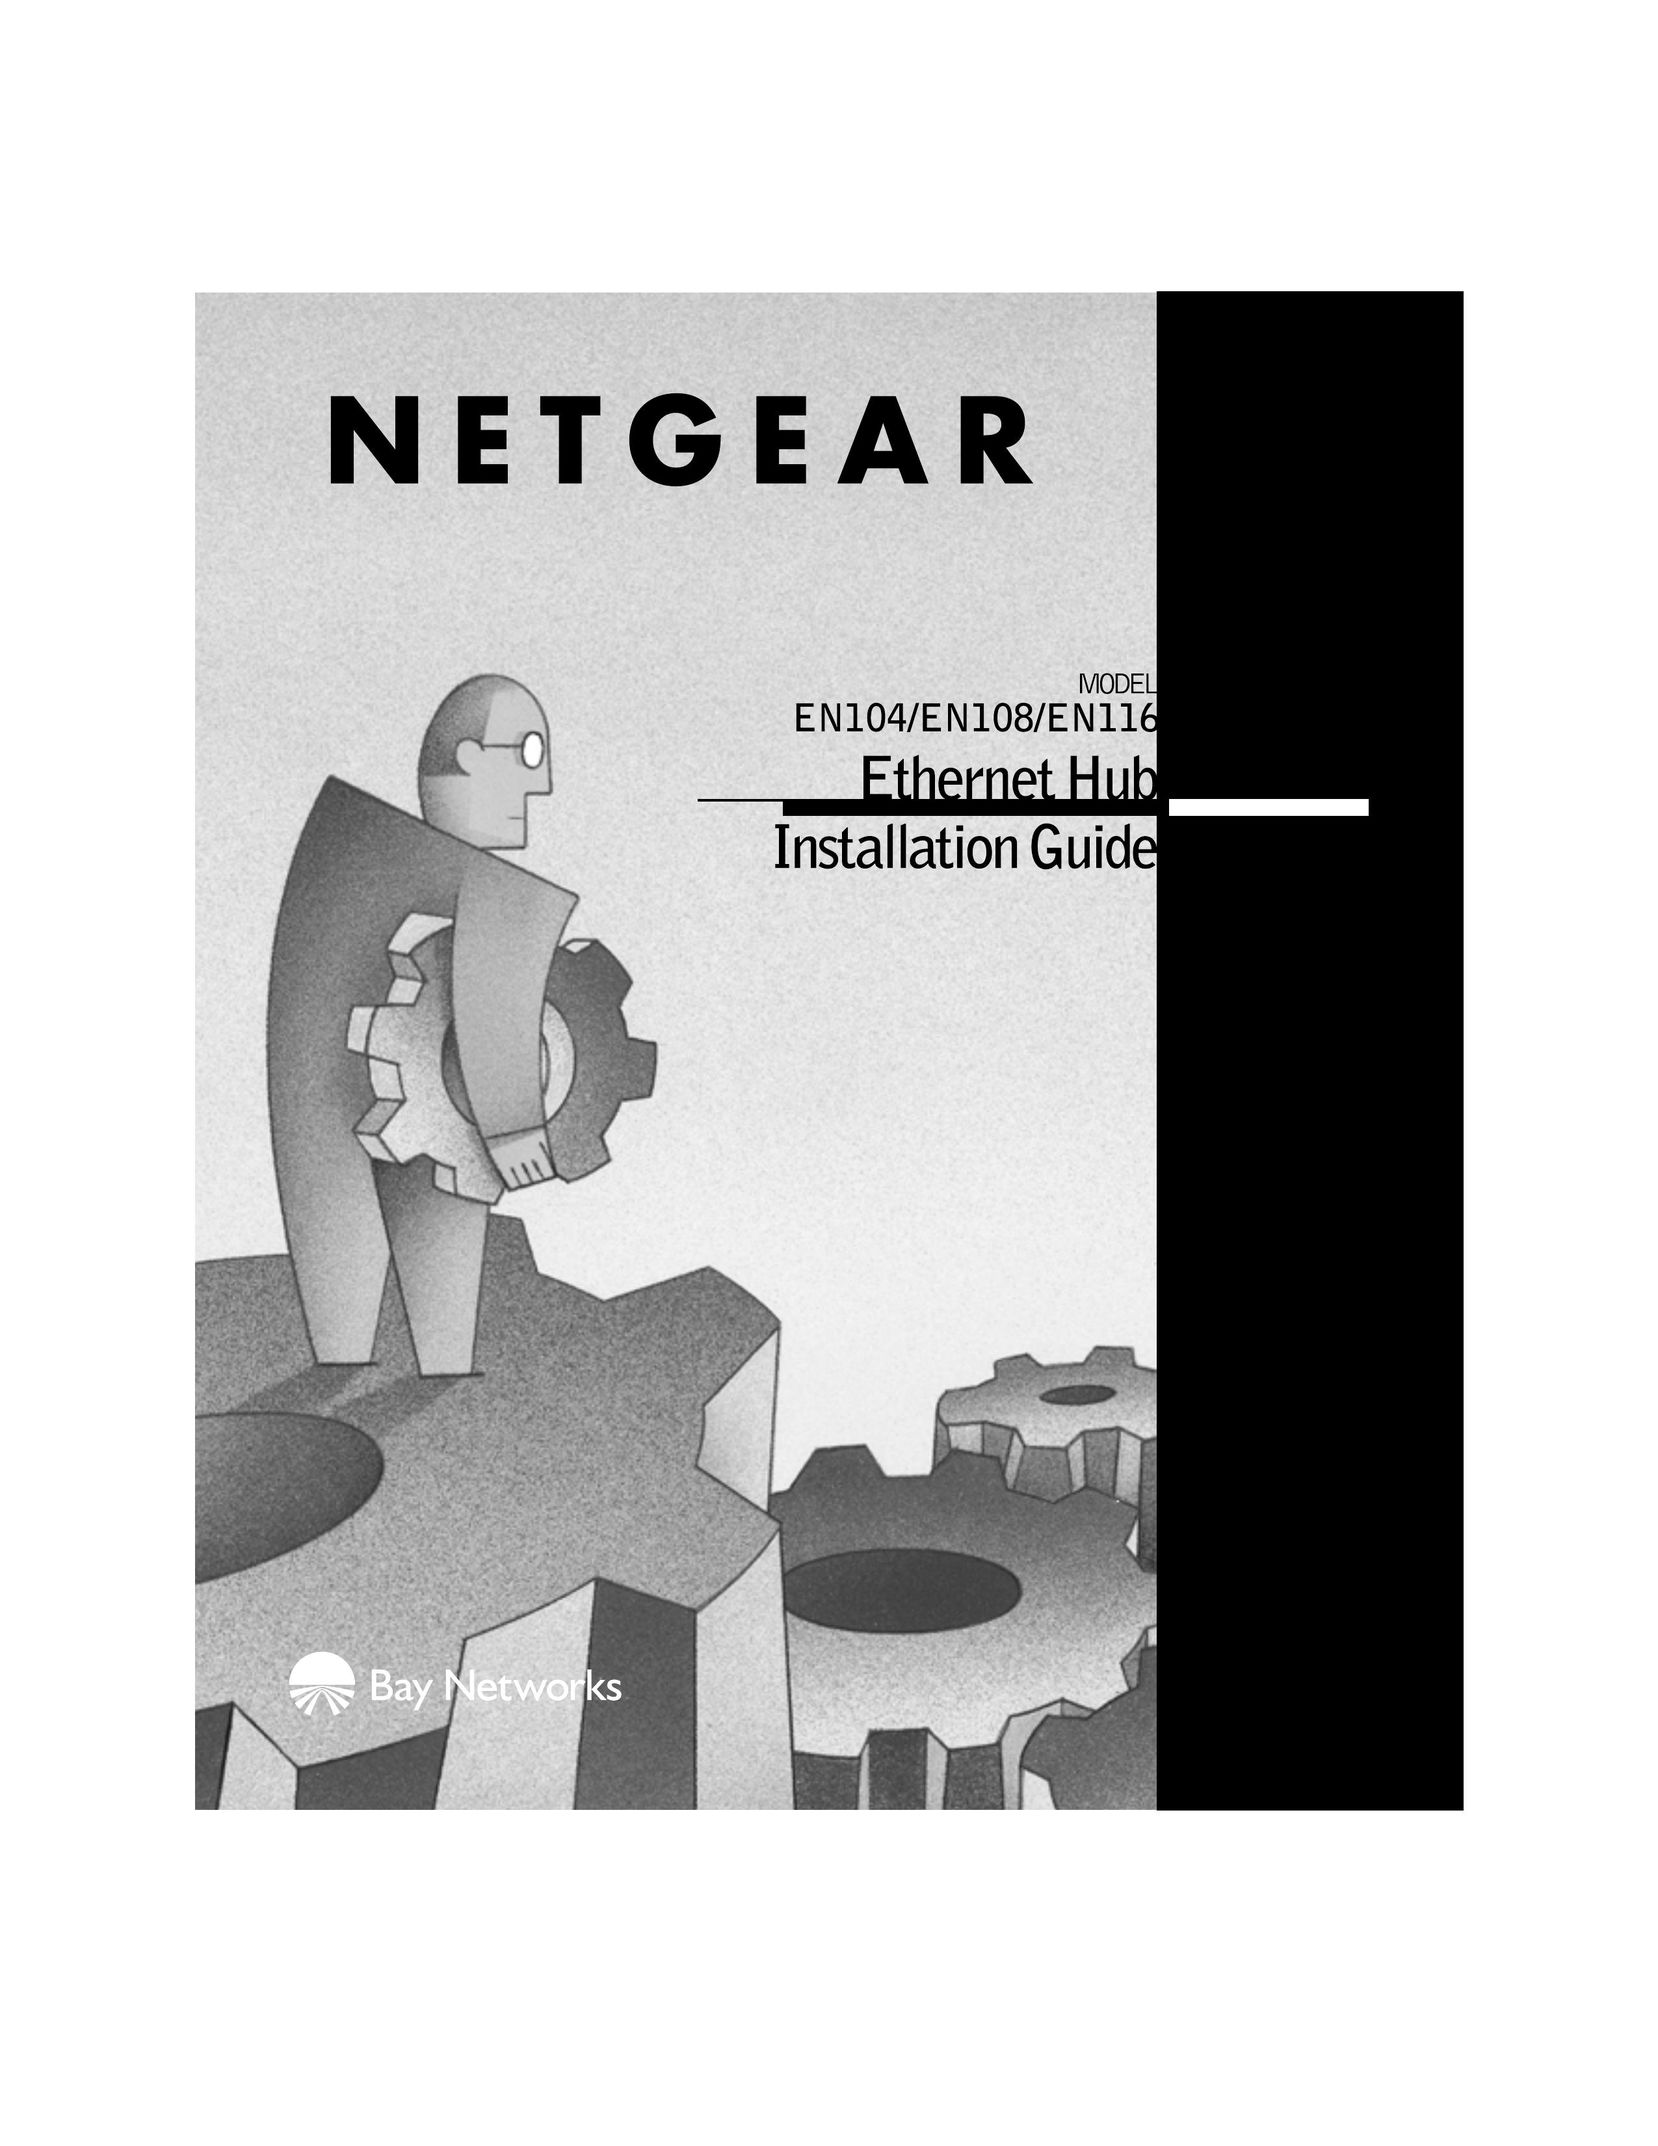 NETGEAR EN108 Switch User Manual